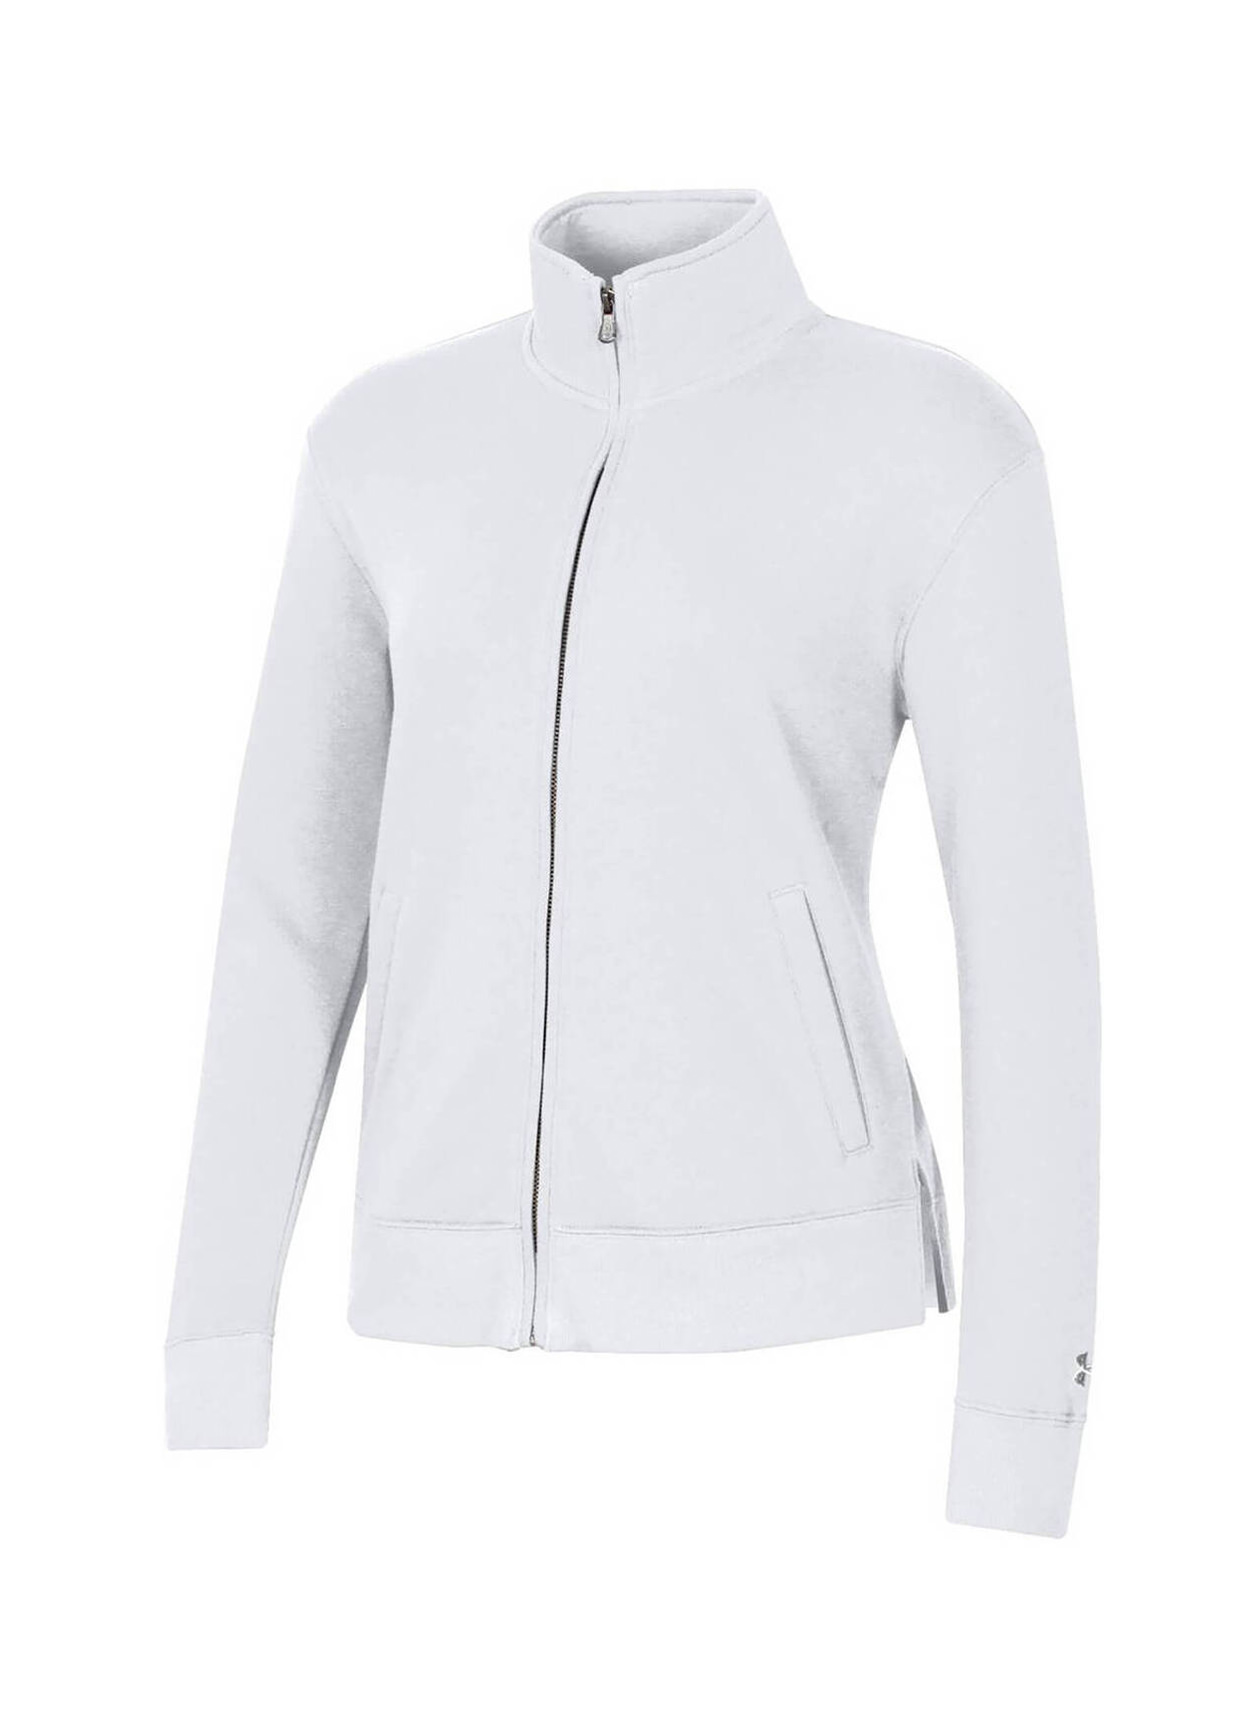 Women's Active Jacket, Undyed-White